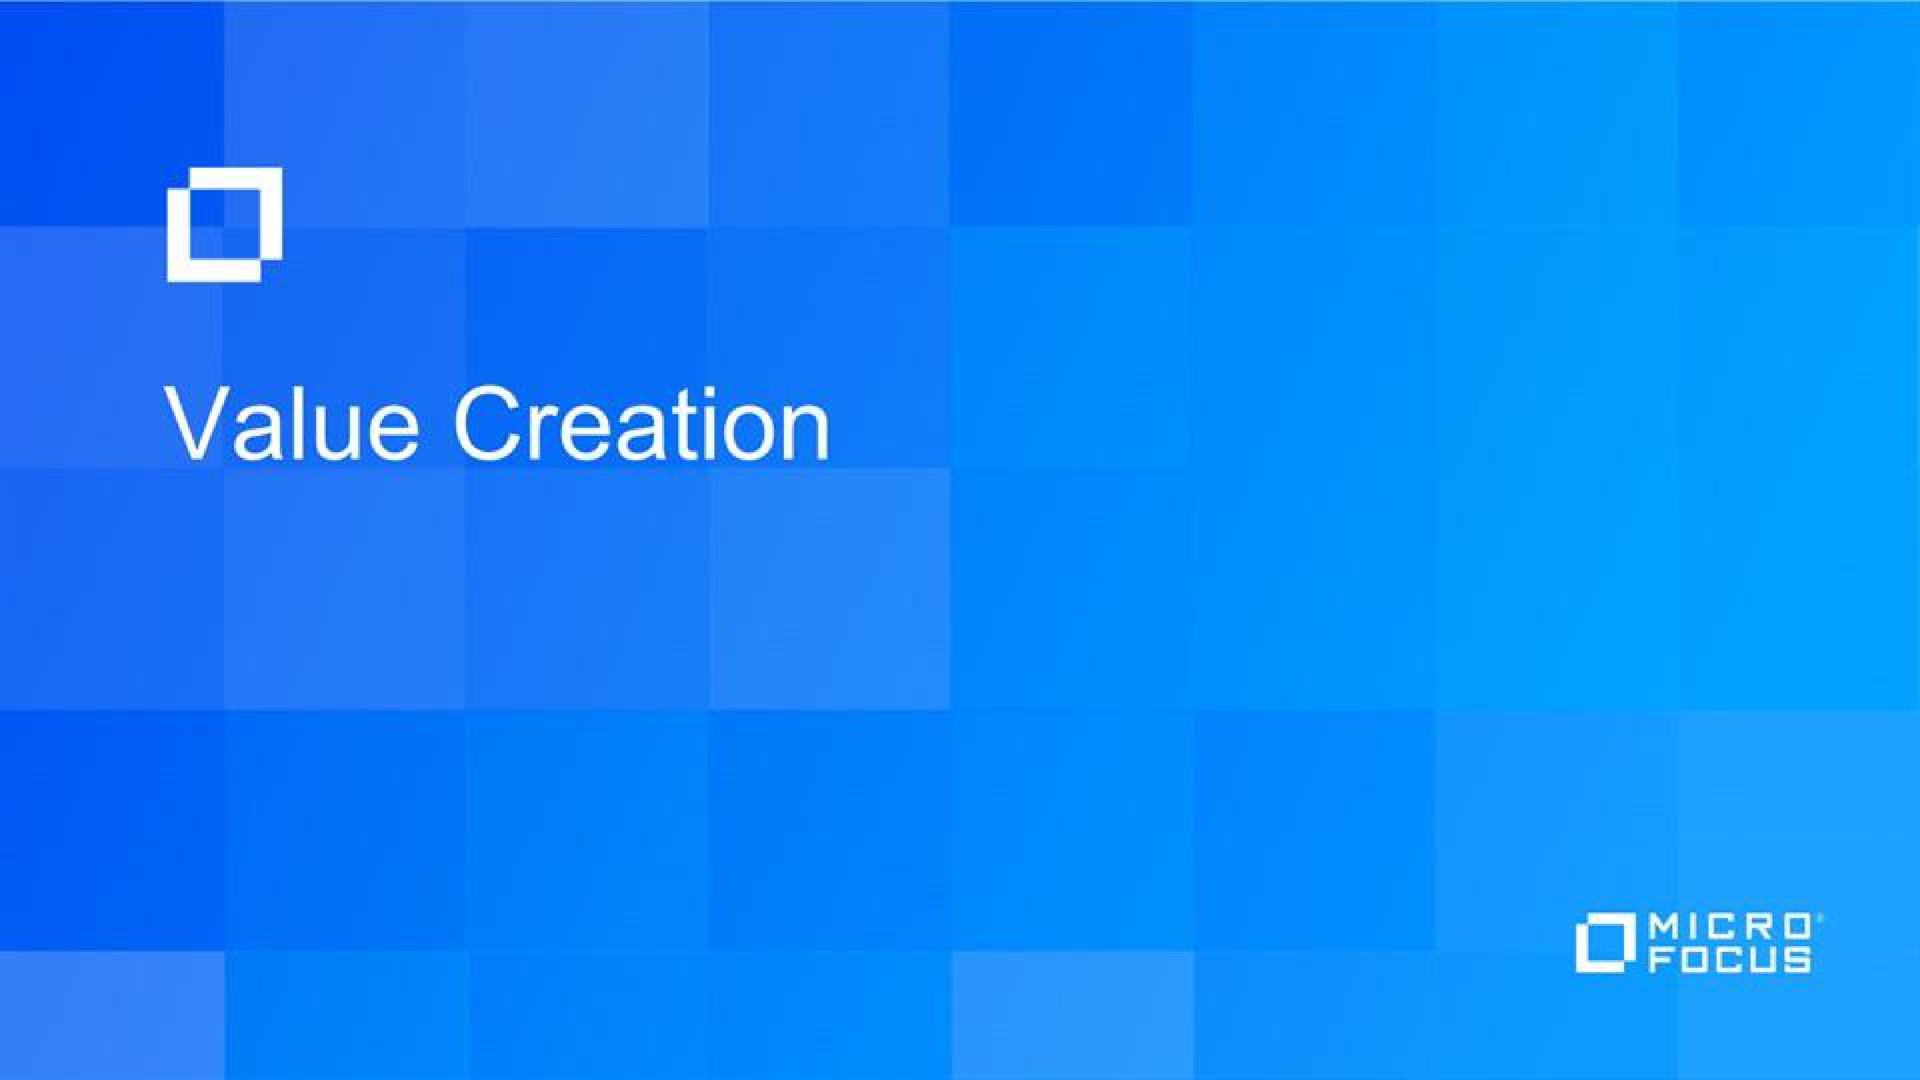 i value creation | Micro Focus